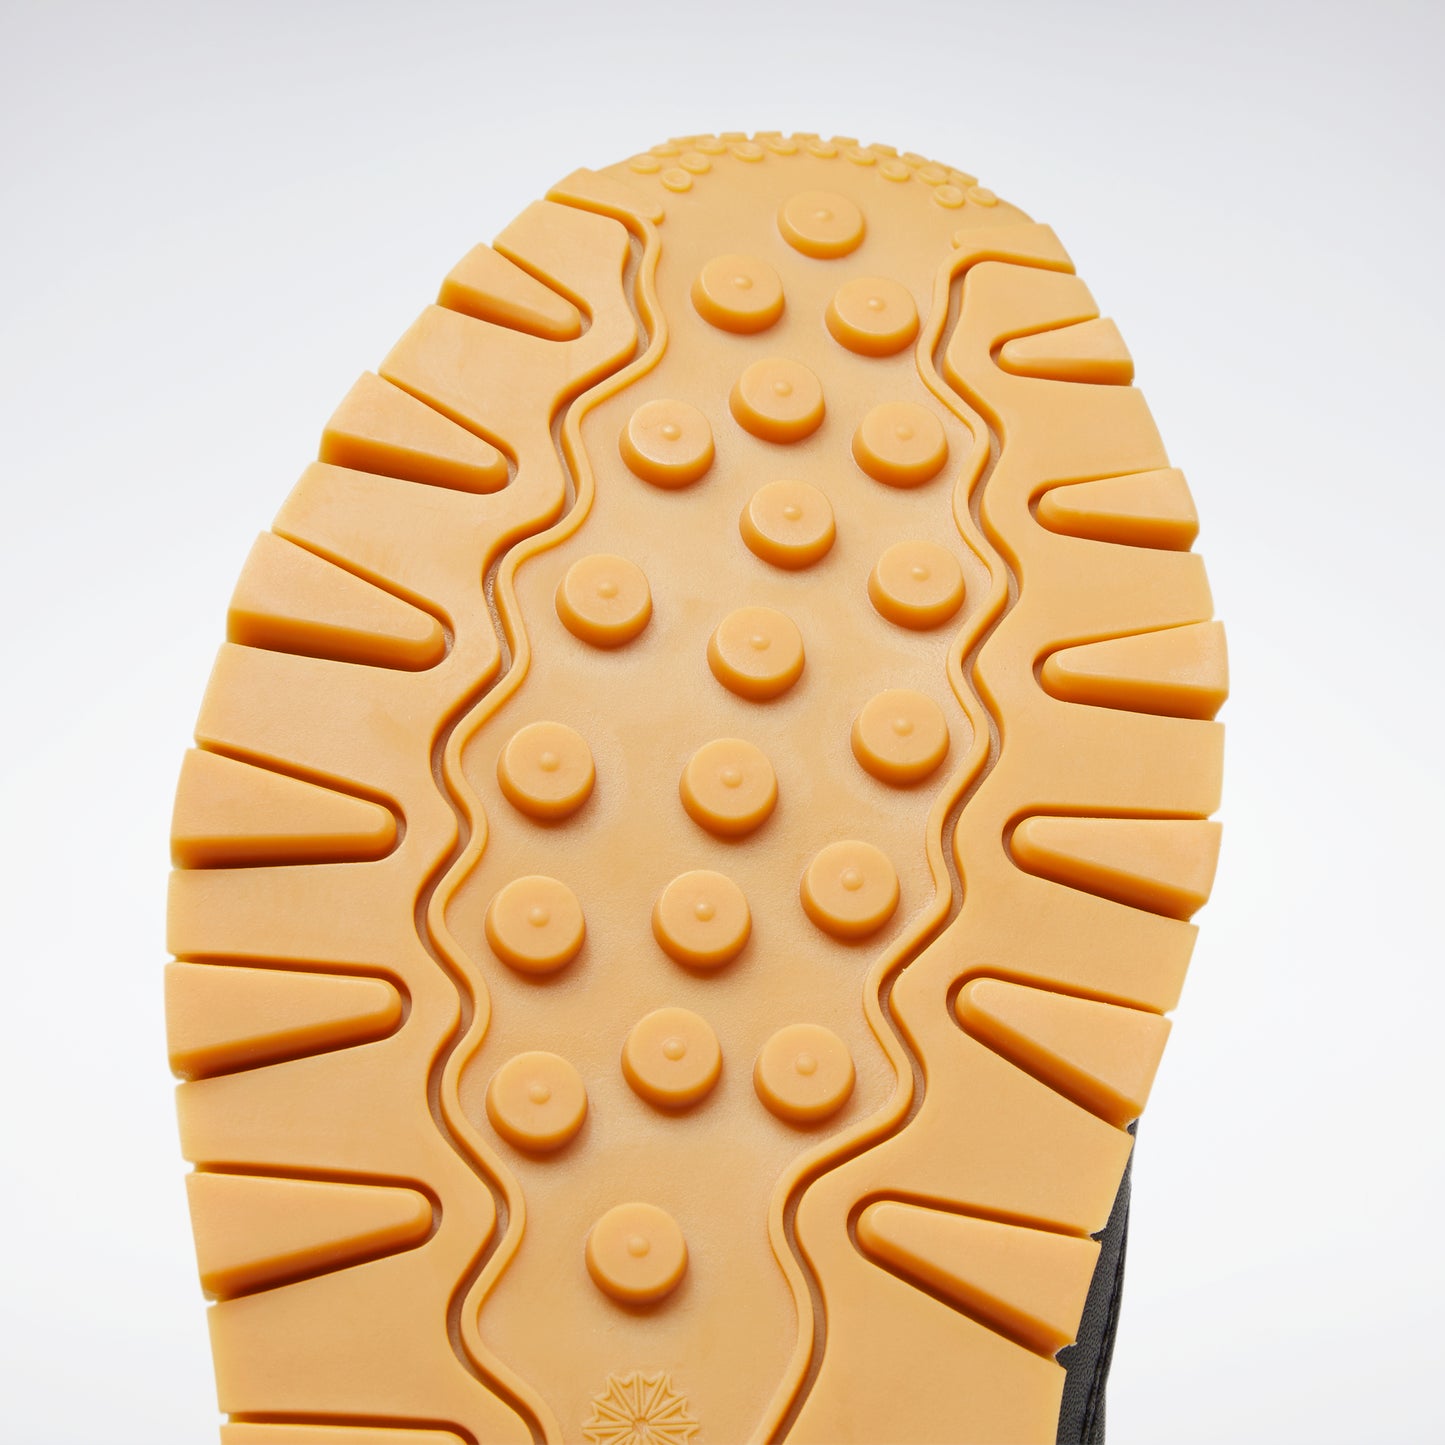 Reebok Footwear Women Classic Leather Shoes Ftwwht/Pugry3/Rbkg03